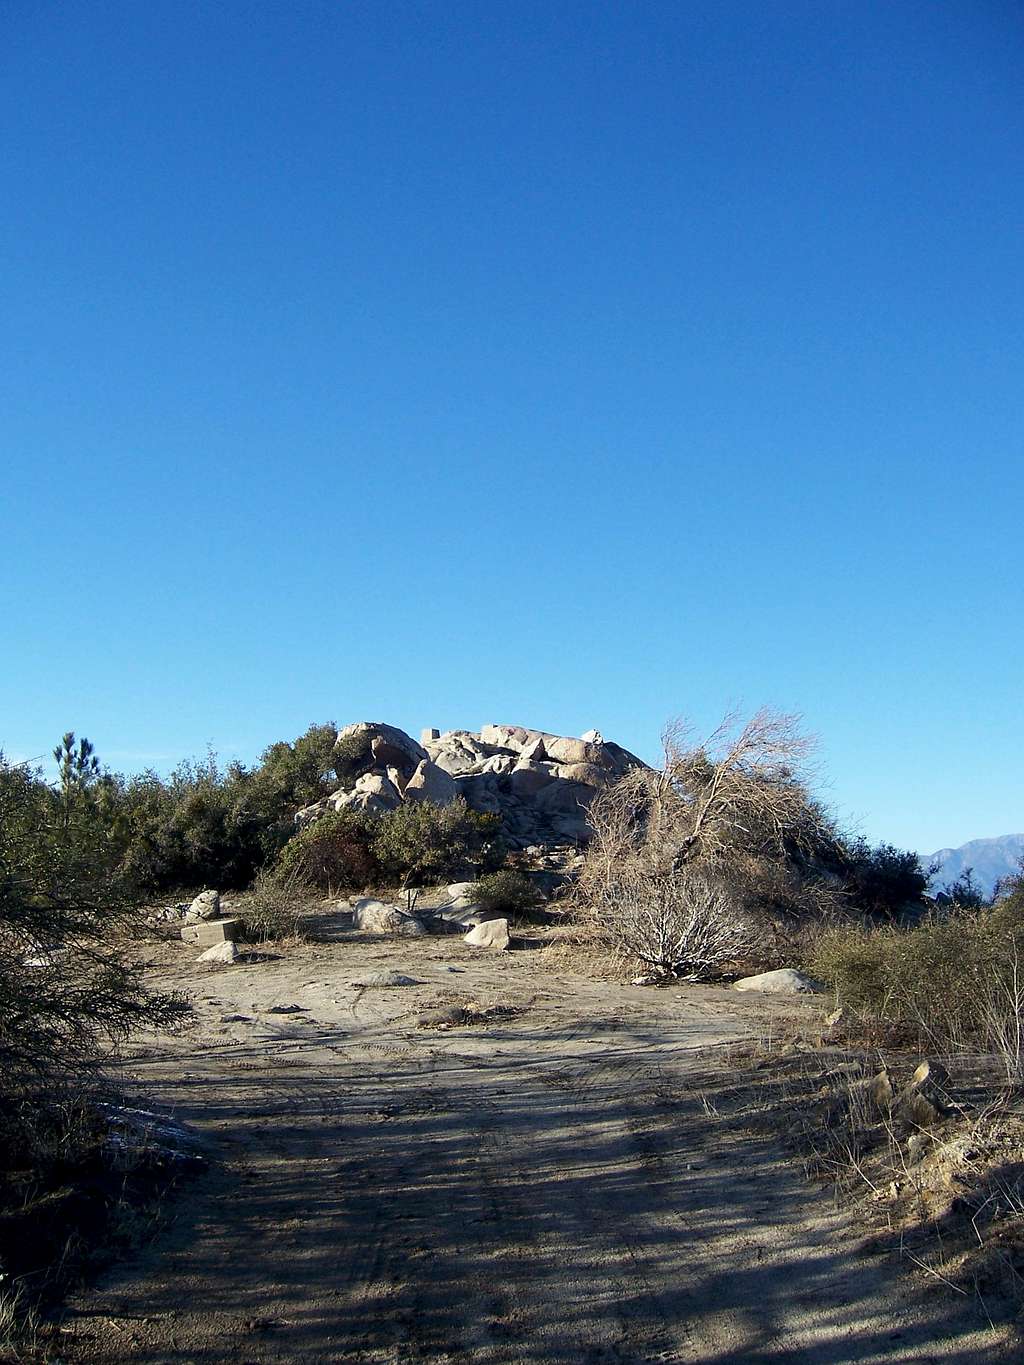 Ranger Peak